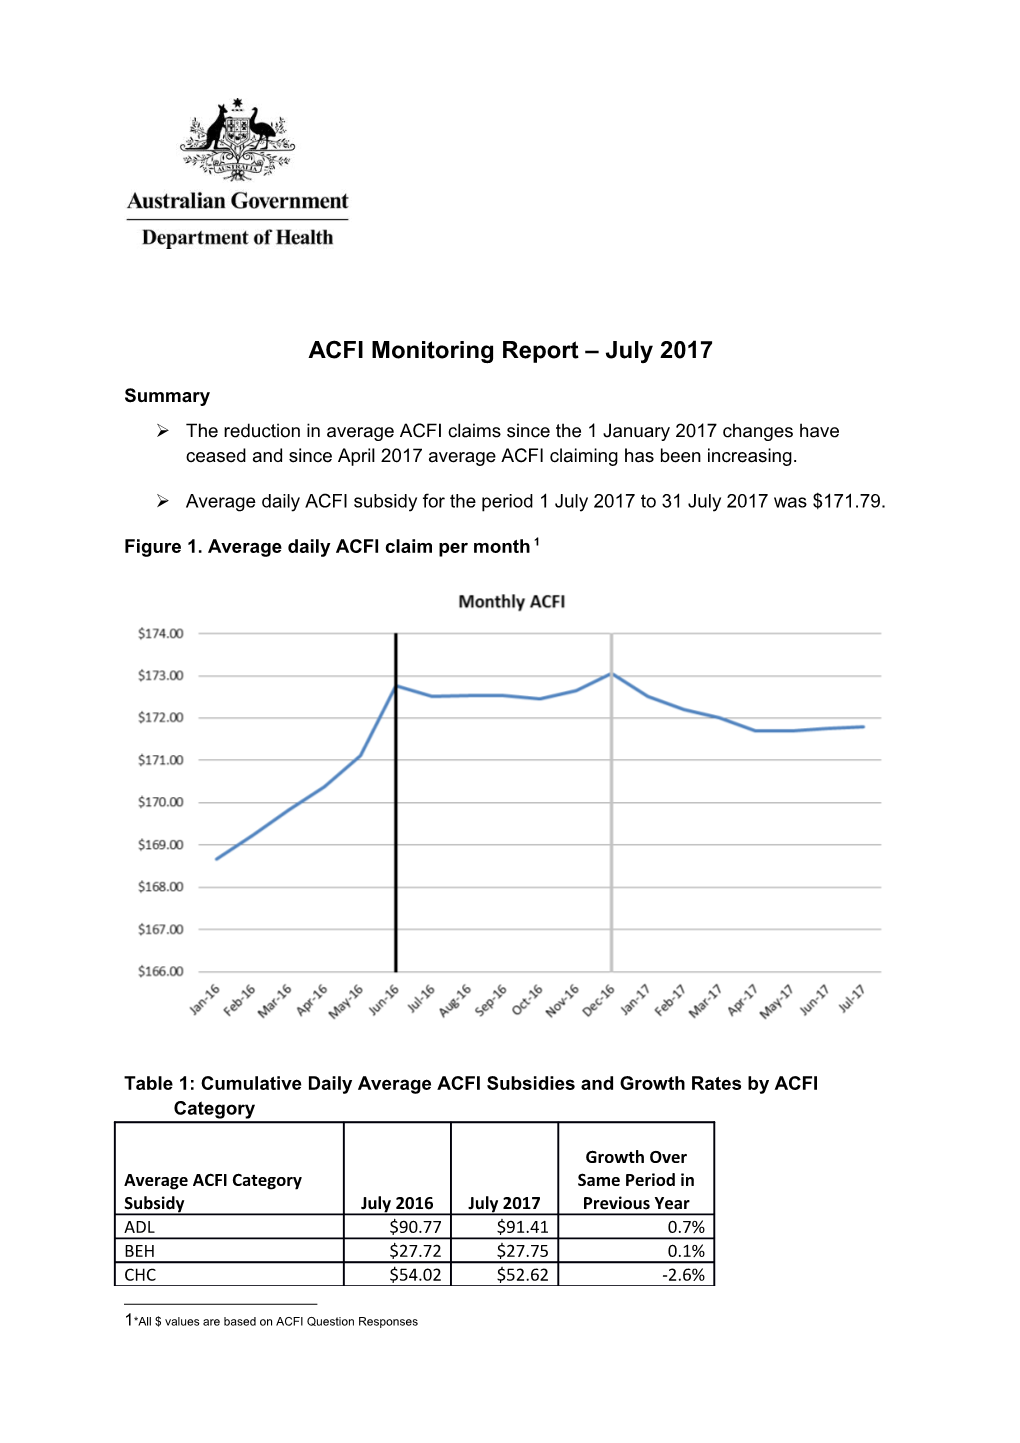 ACFI Monitoring Report July 2017